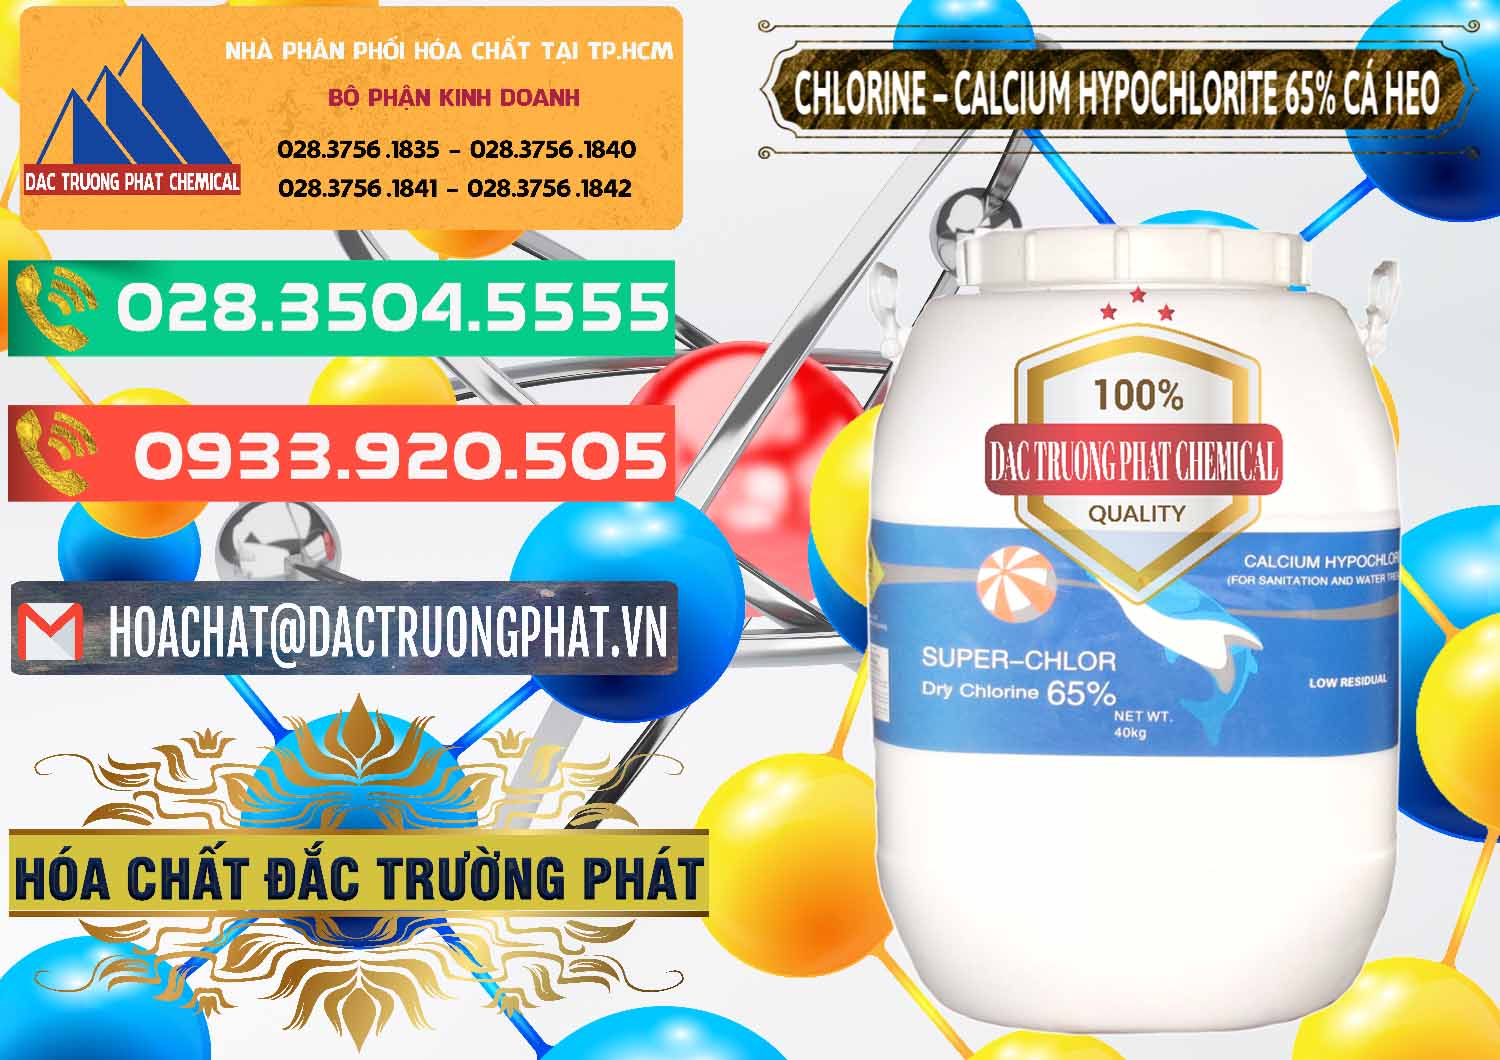 Cty chuyên cung cấp và bán Clorin - Chlorine Cá Heo 65% Trung Quốc China - 0053 - Cty nhập khẩu ( cung cấp ) hóa chất tại TP.HCM - congtyhoachat.com.vn